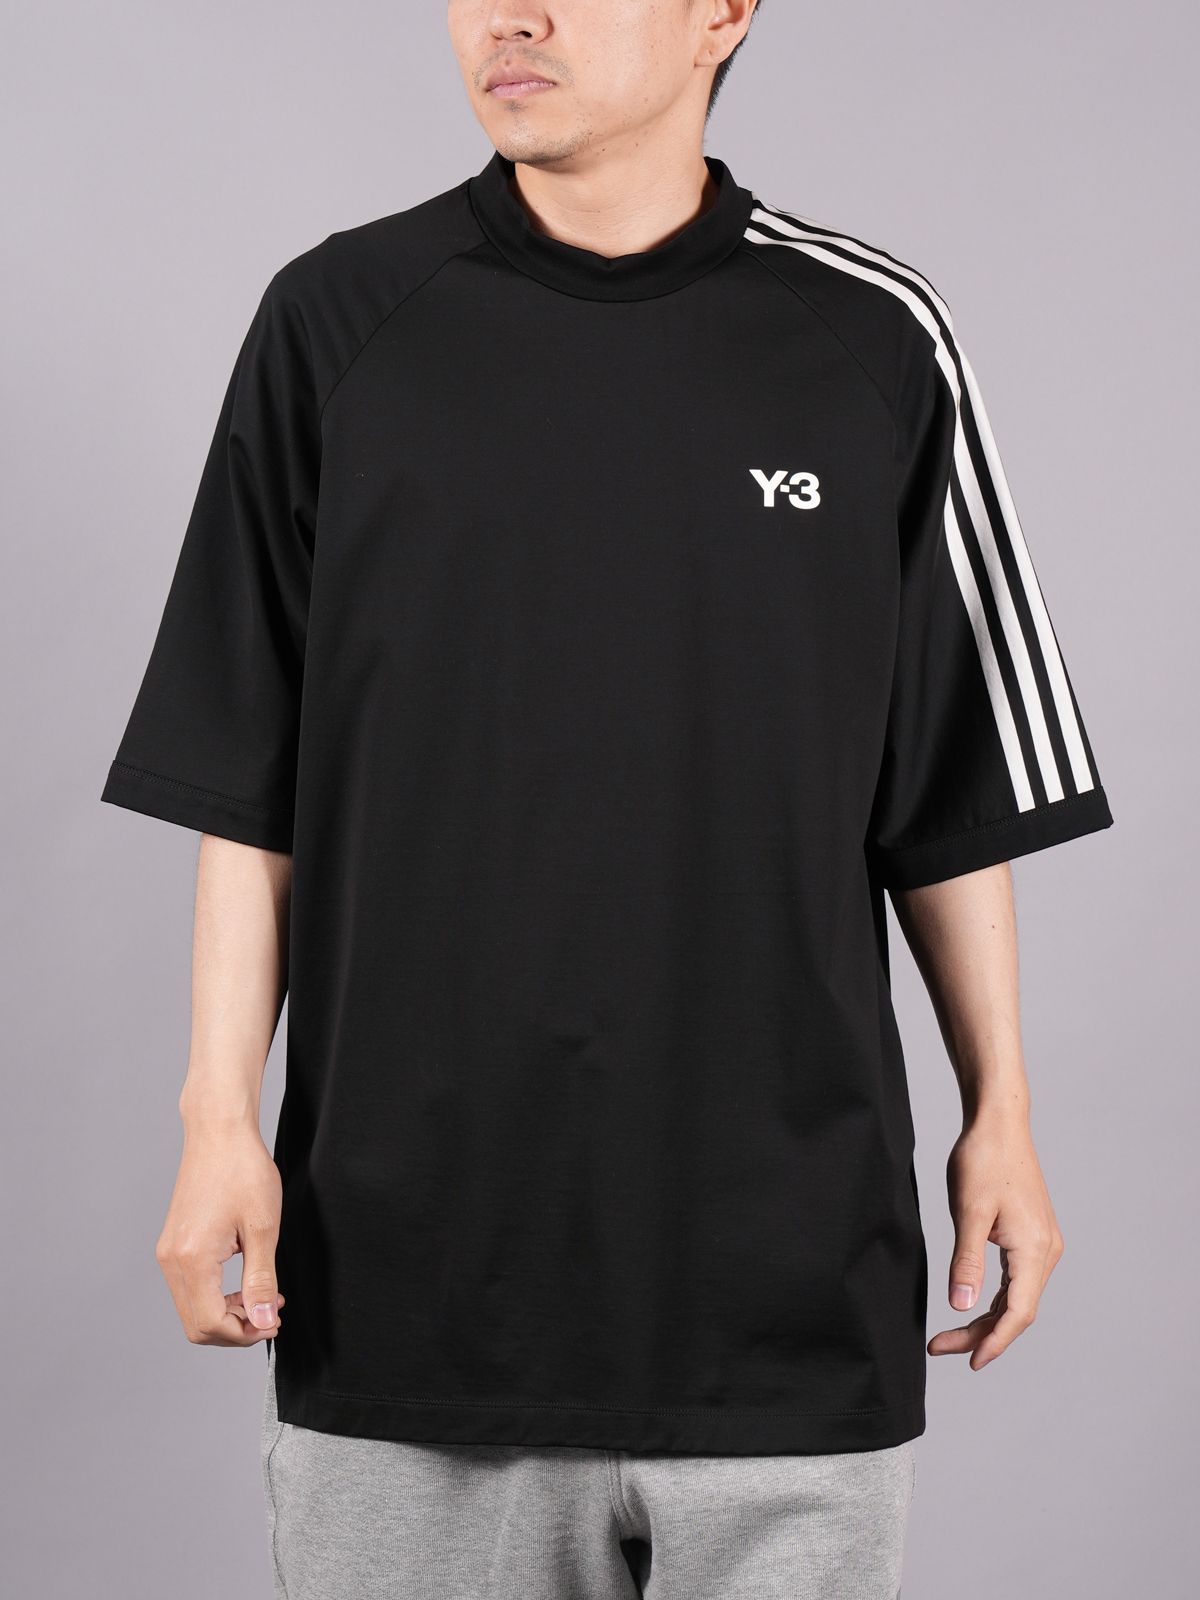 SYPPY-3 ワイスリー 3ストライプス オーバーサイズ Tシャツ H63065